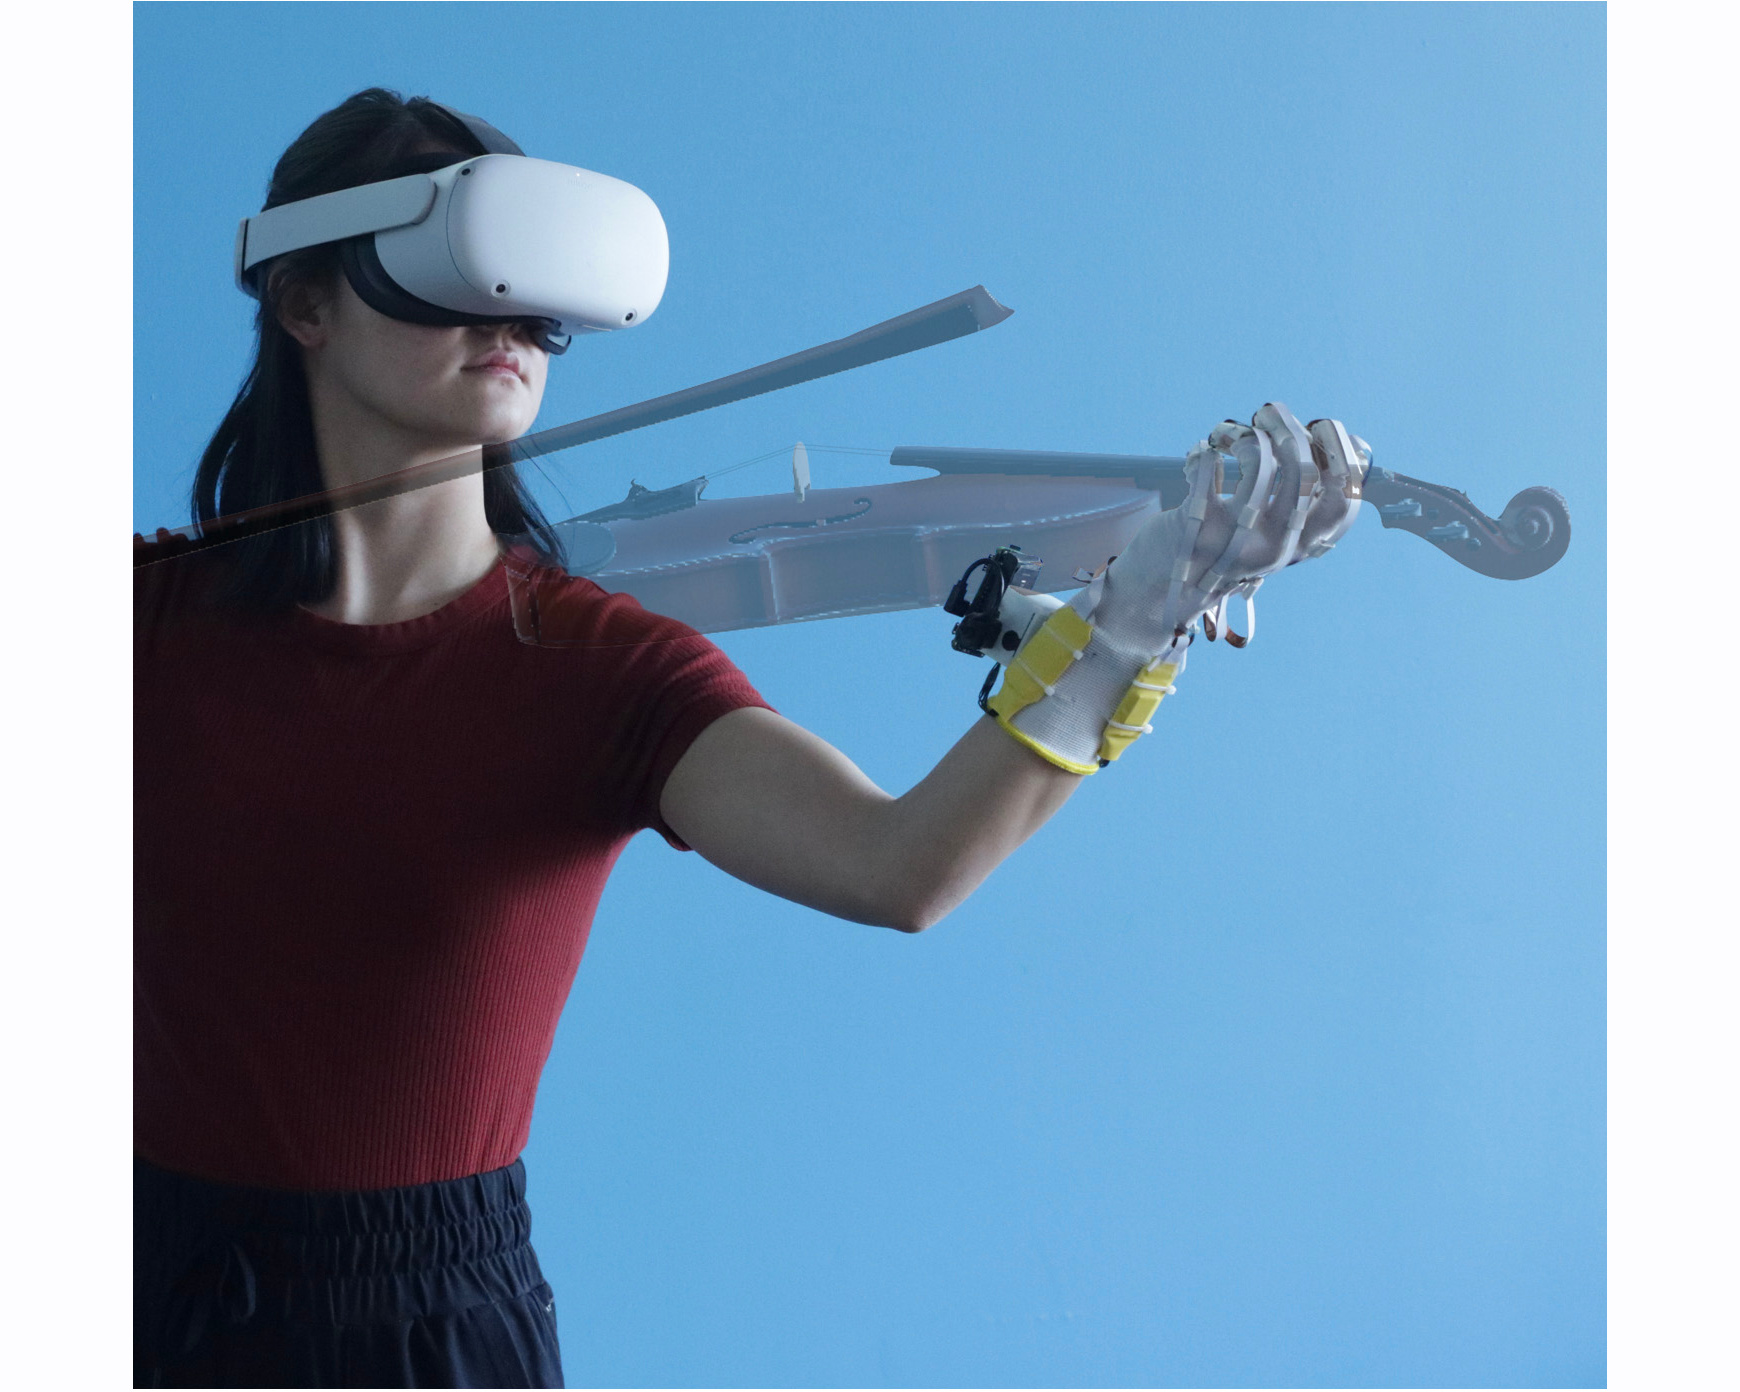 Neuer VR-Handschuh mit bahnbrechender Technologie für realitätsnahe Berührungen, deutlich günstiger als Metaverse Glove